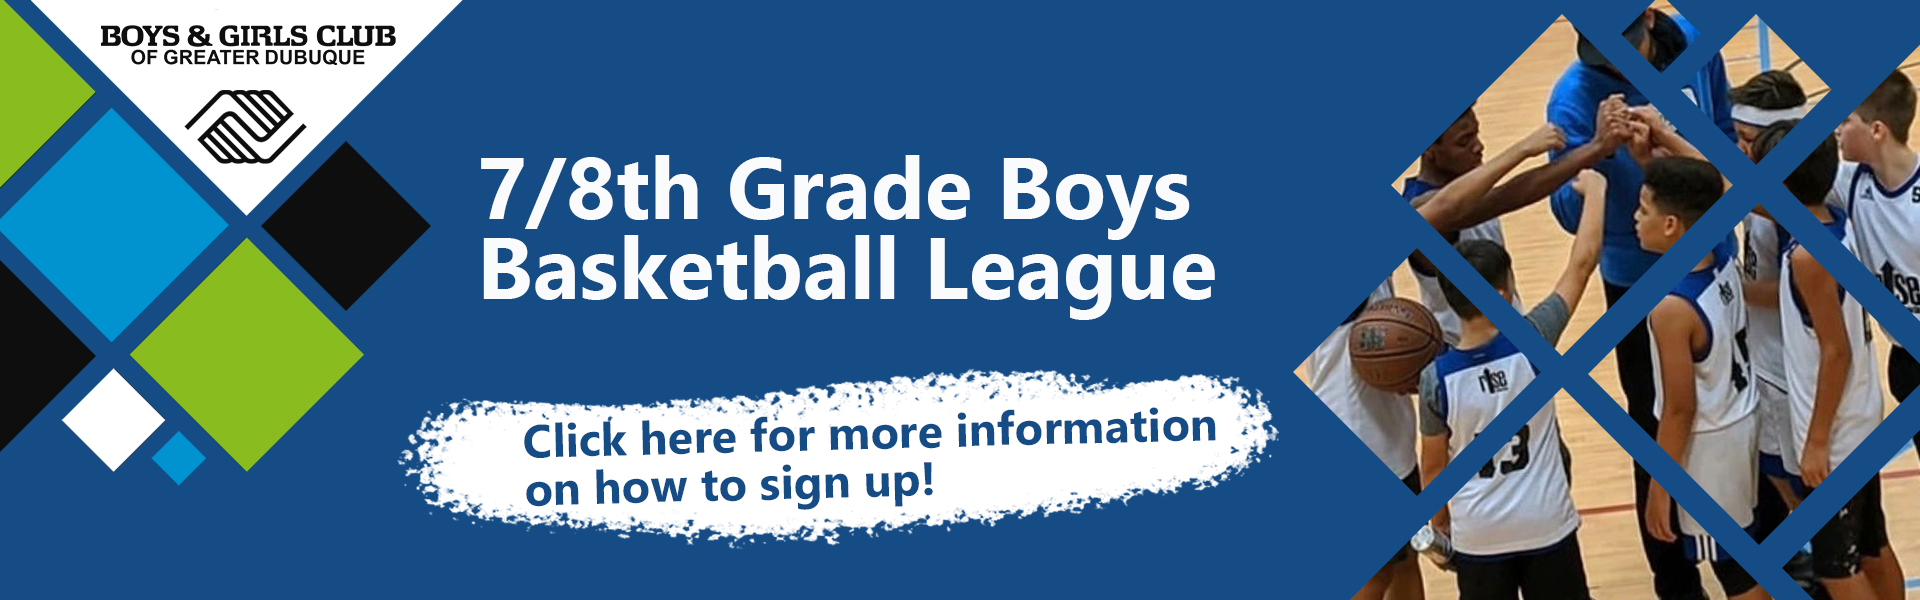 7/8th Grade Boys Basketball League